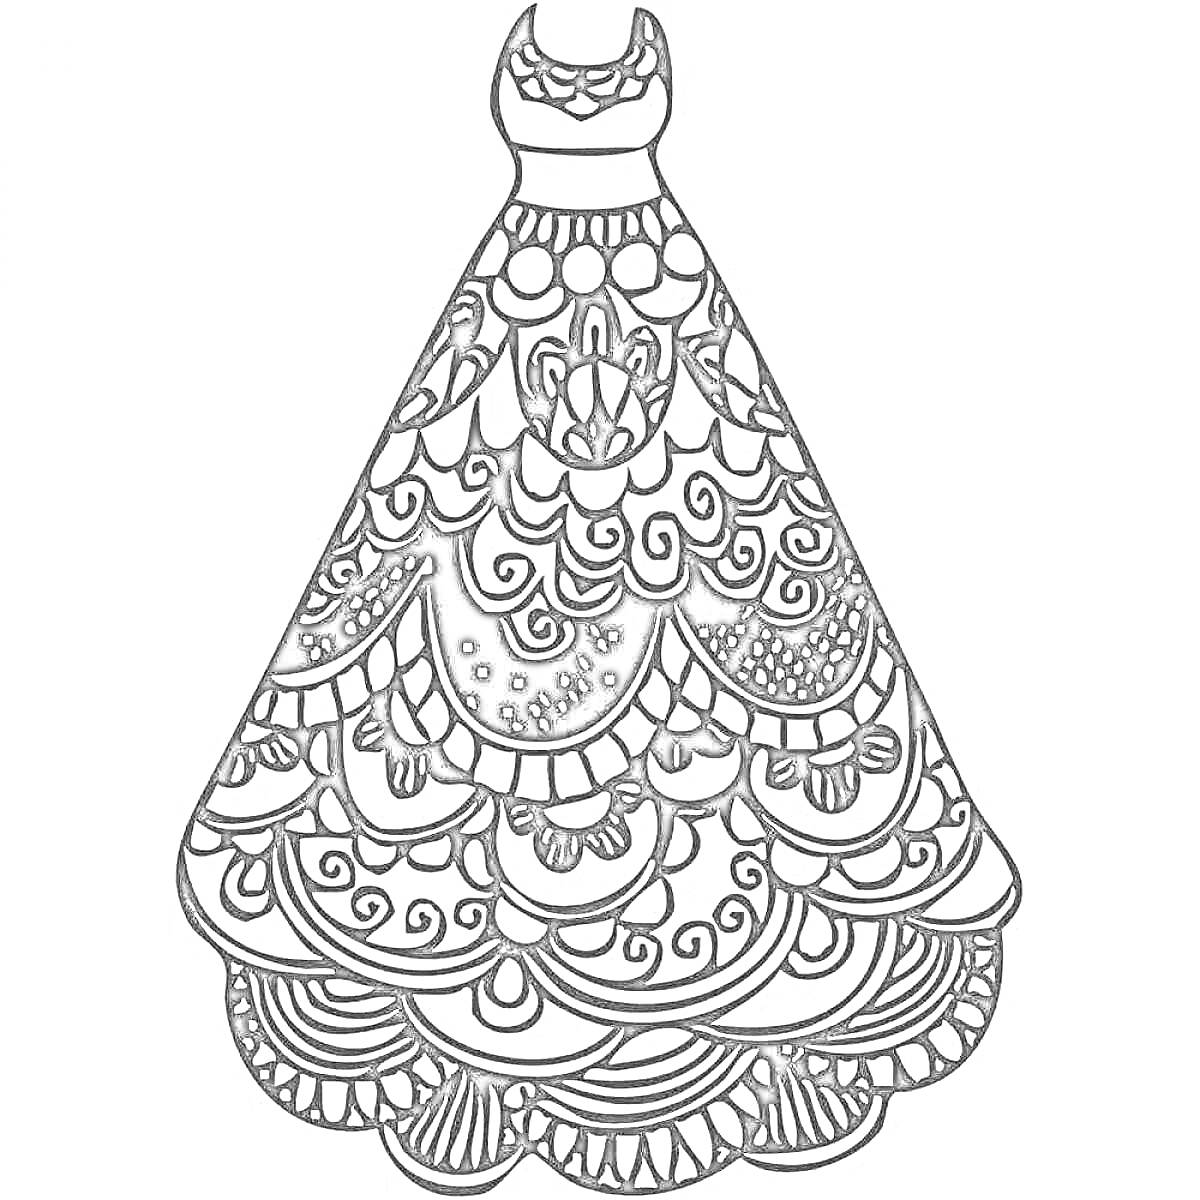 Раскраска Платье с узорами, волнистый нижний край, кружево на бюсте, декоративные элементы по всей поверхности